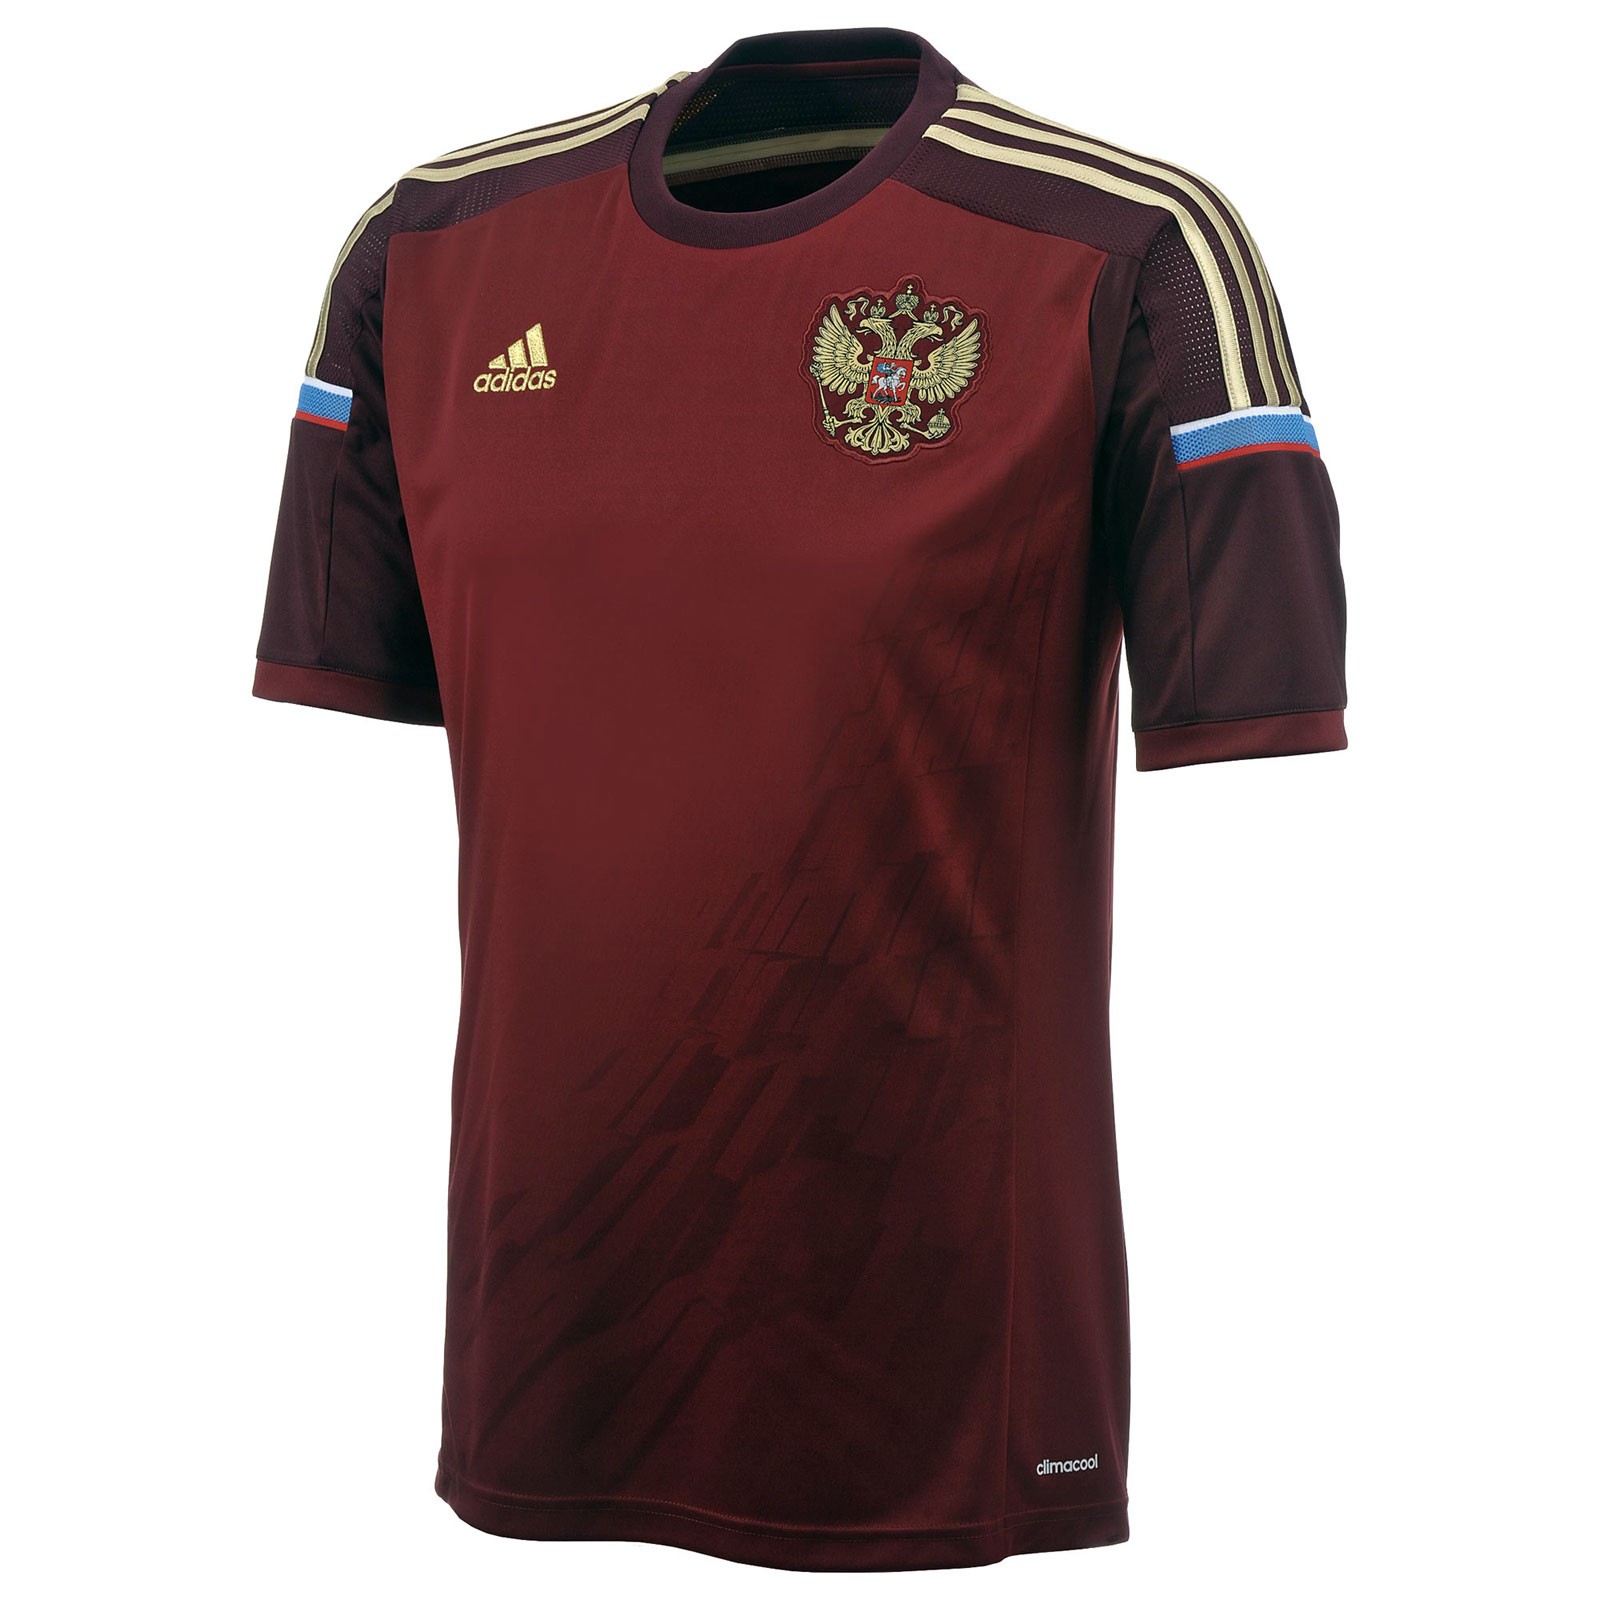 俄罗斯国家队2014世界杯球迷版主场球衣